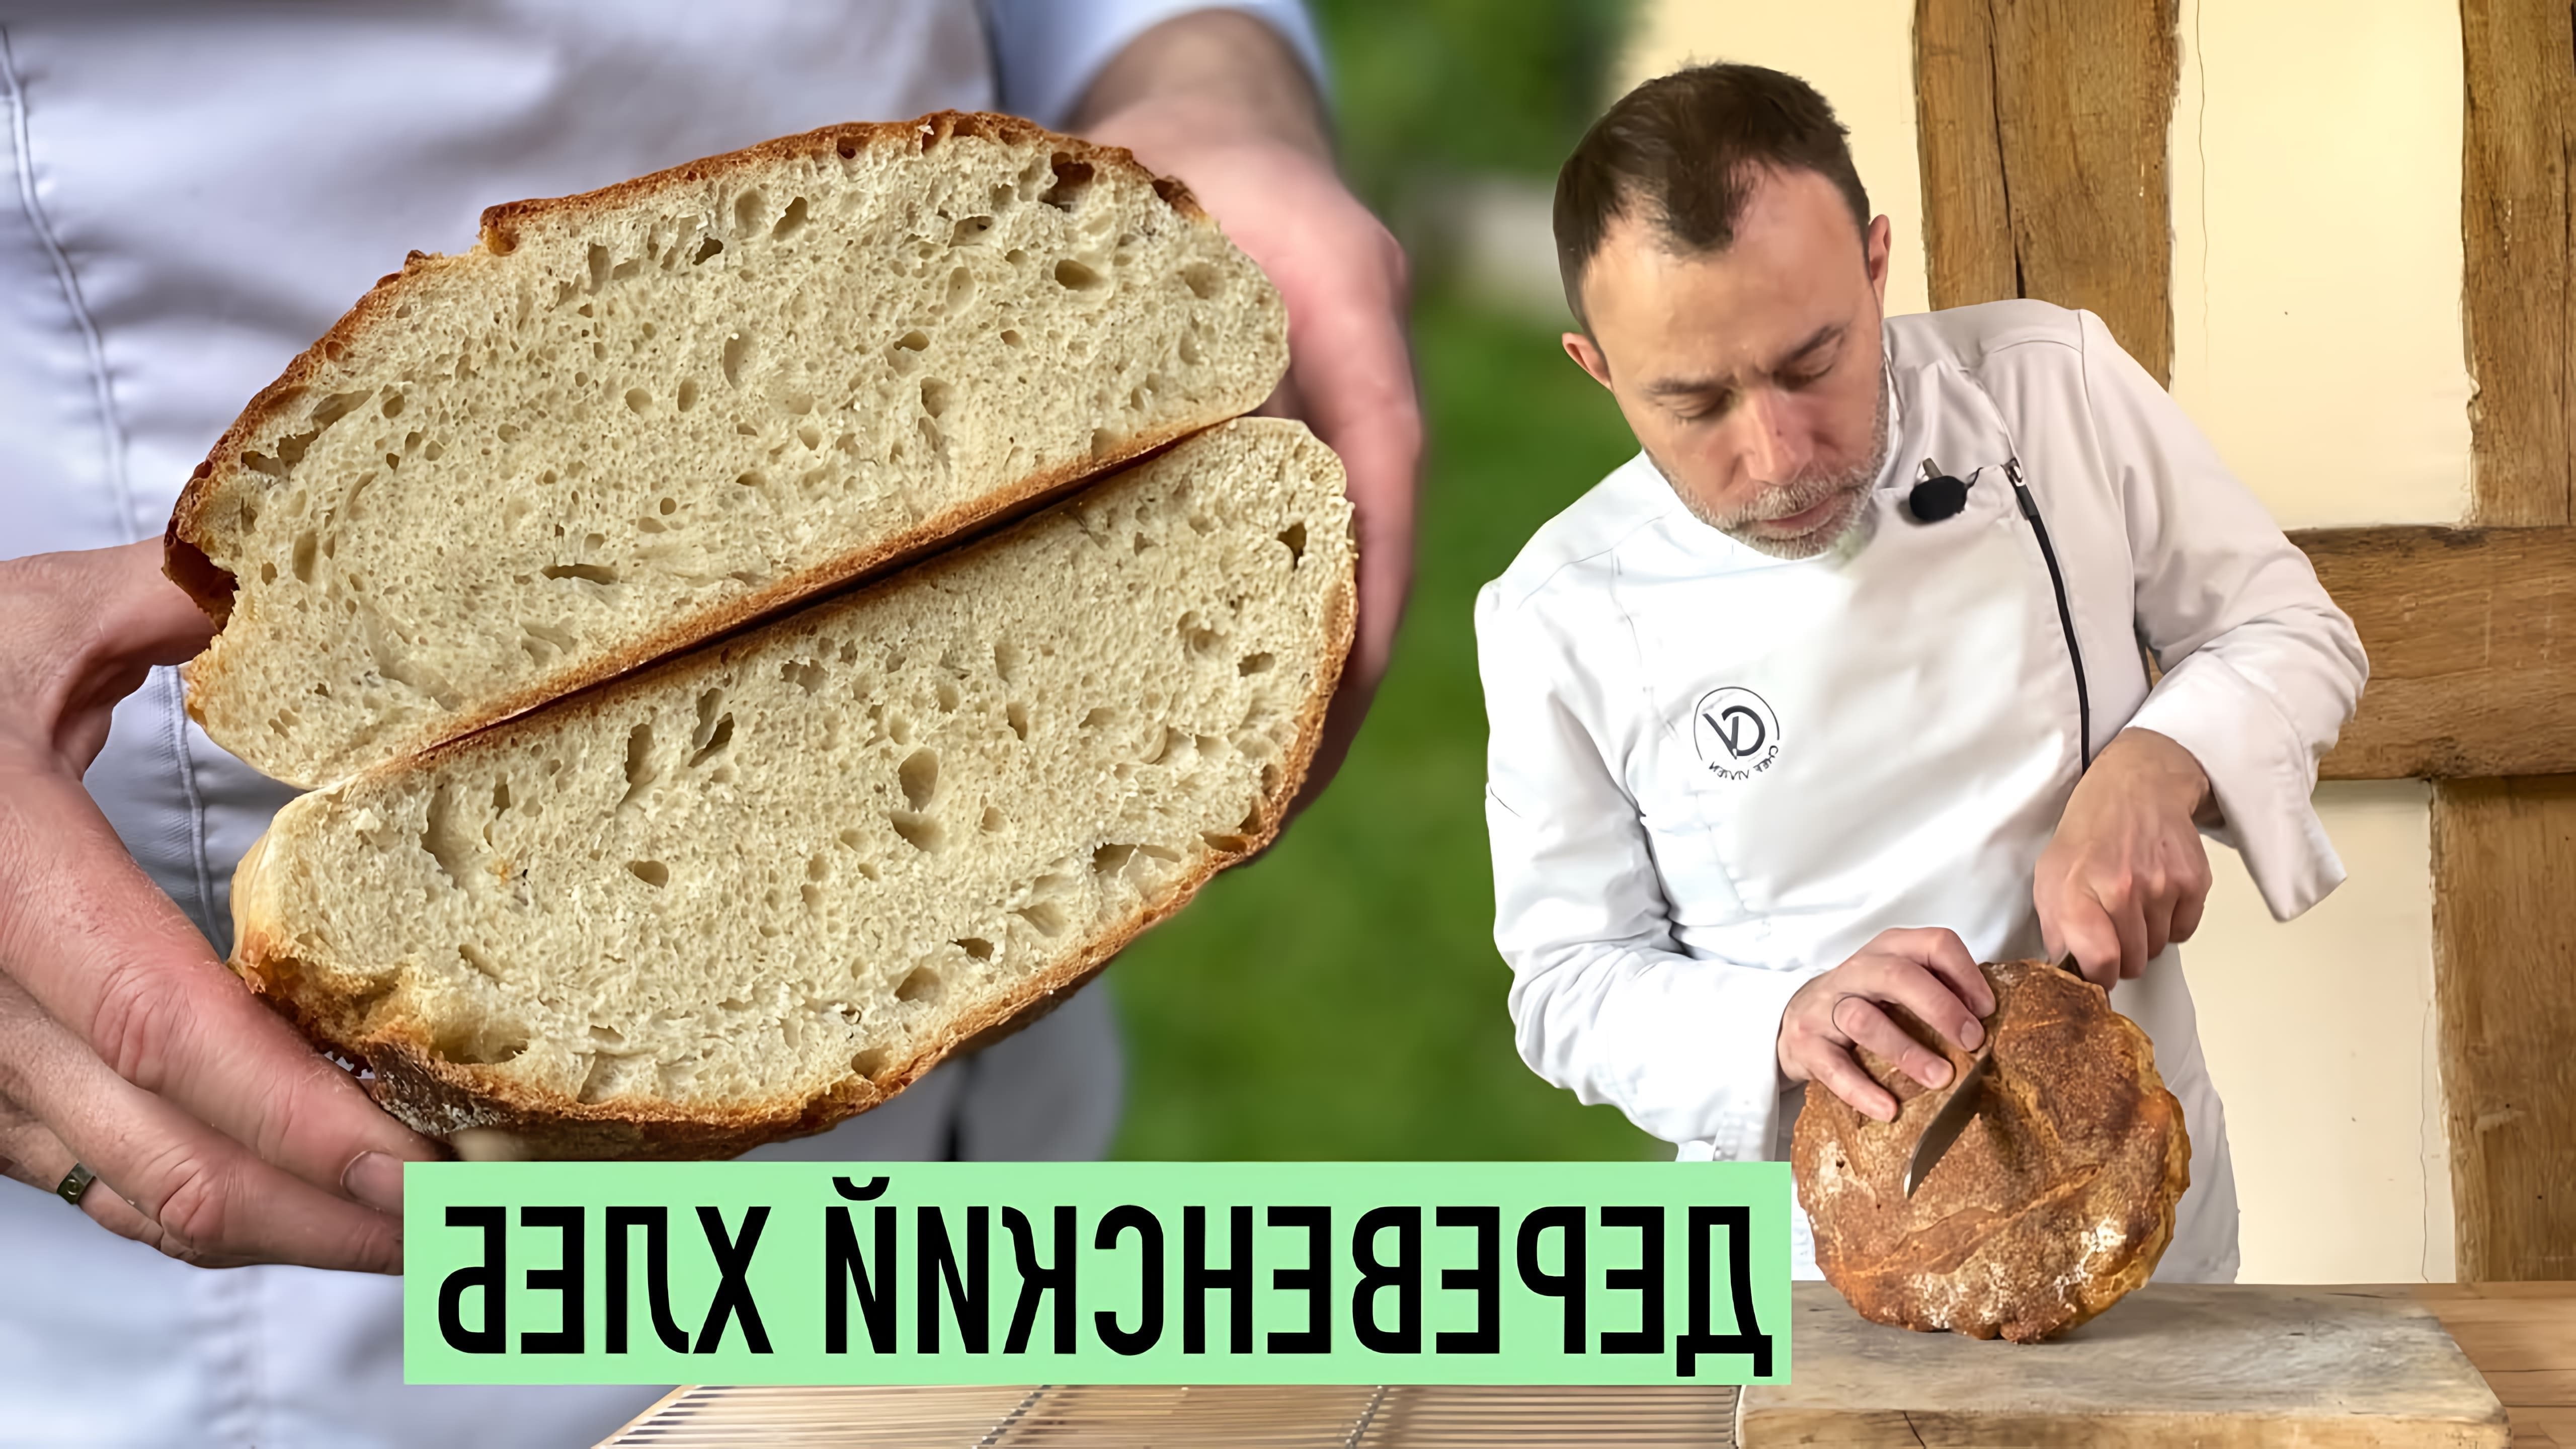 В этом видео демонстрируется процесс приготовления французского хлеба с толстой хрустящей корочкой